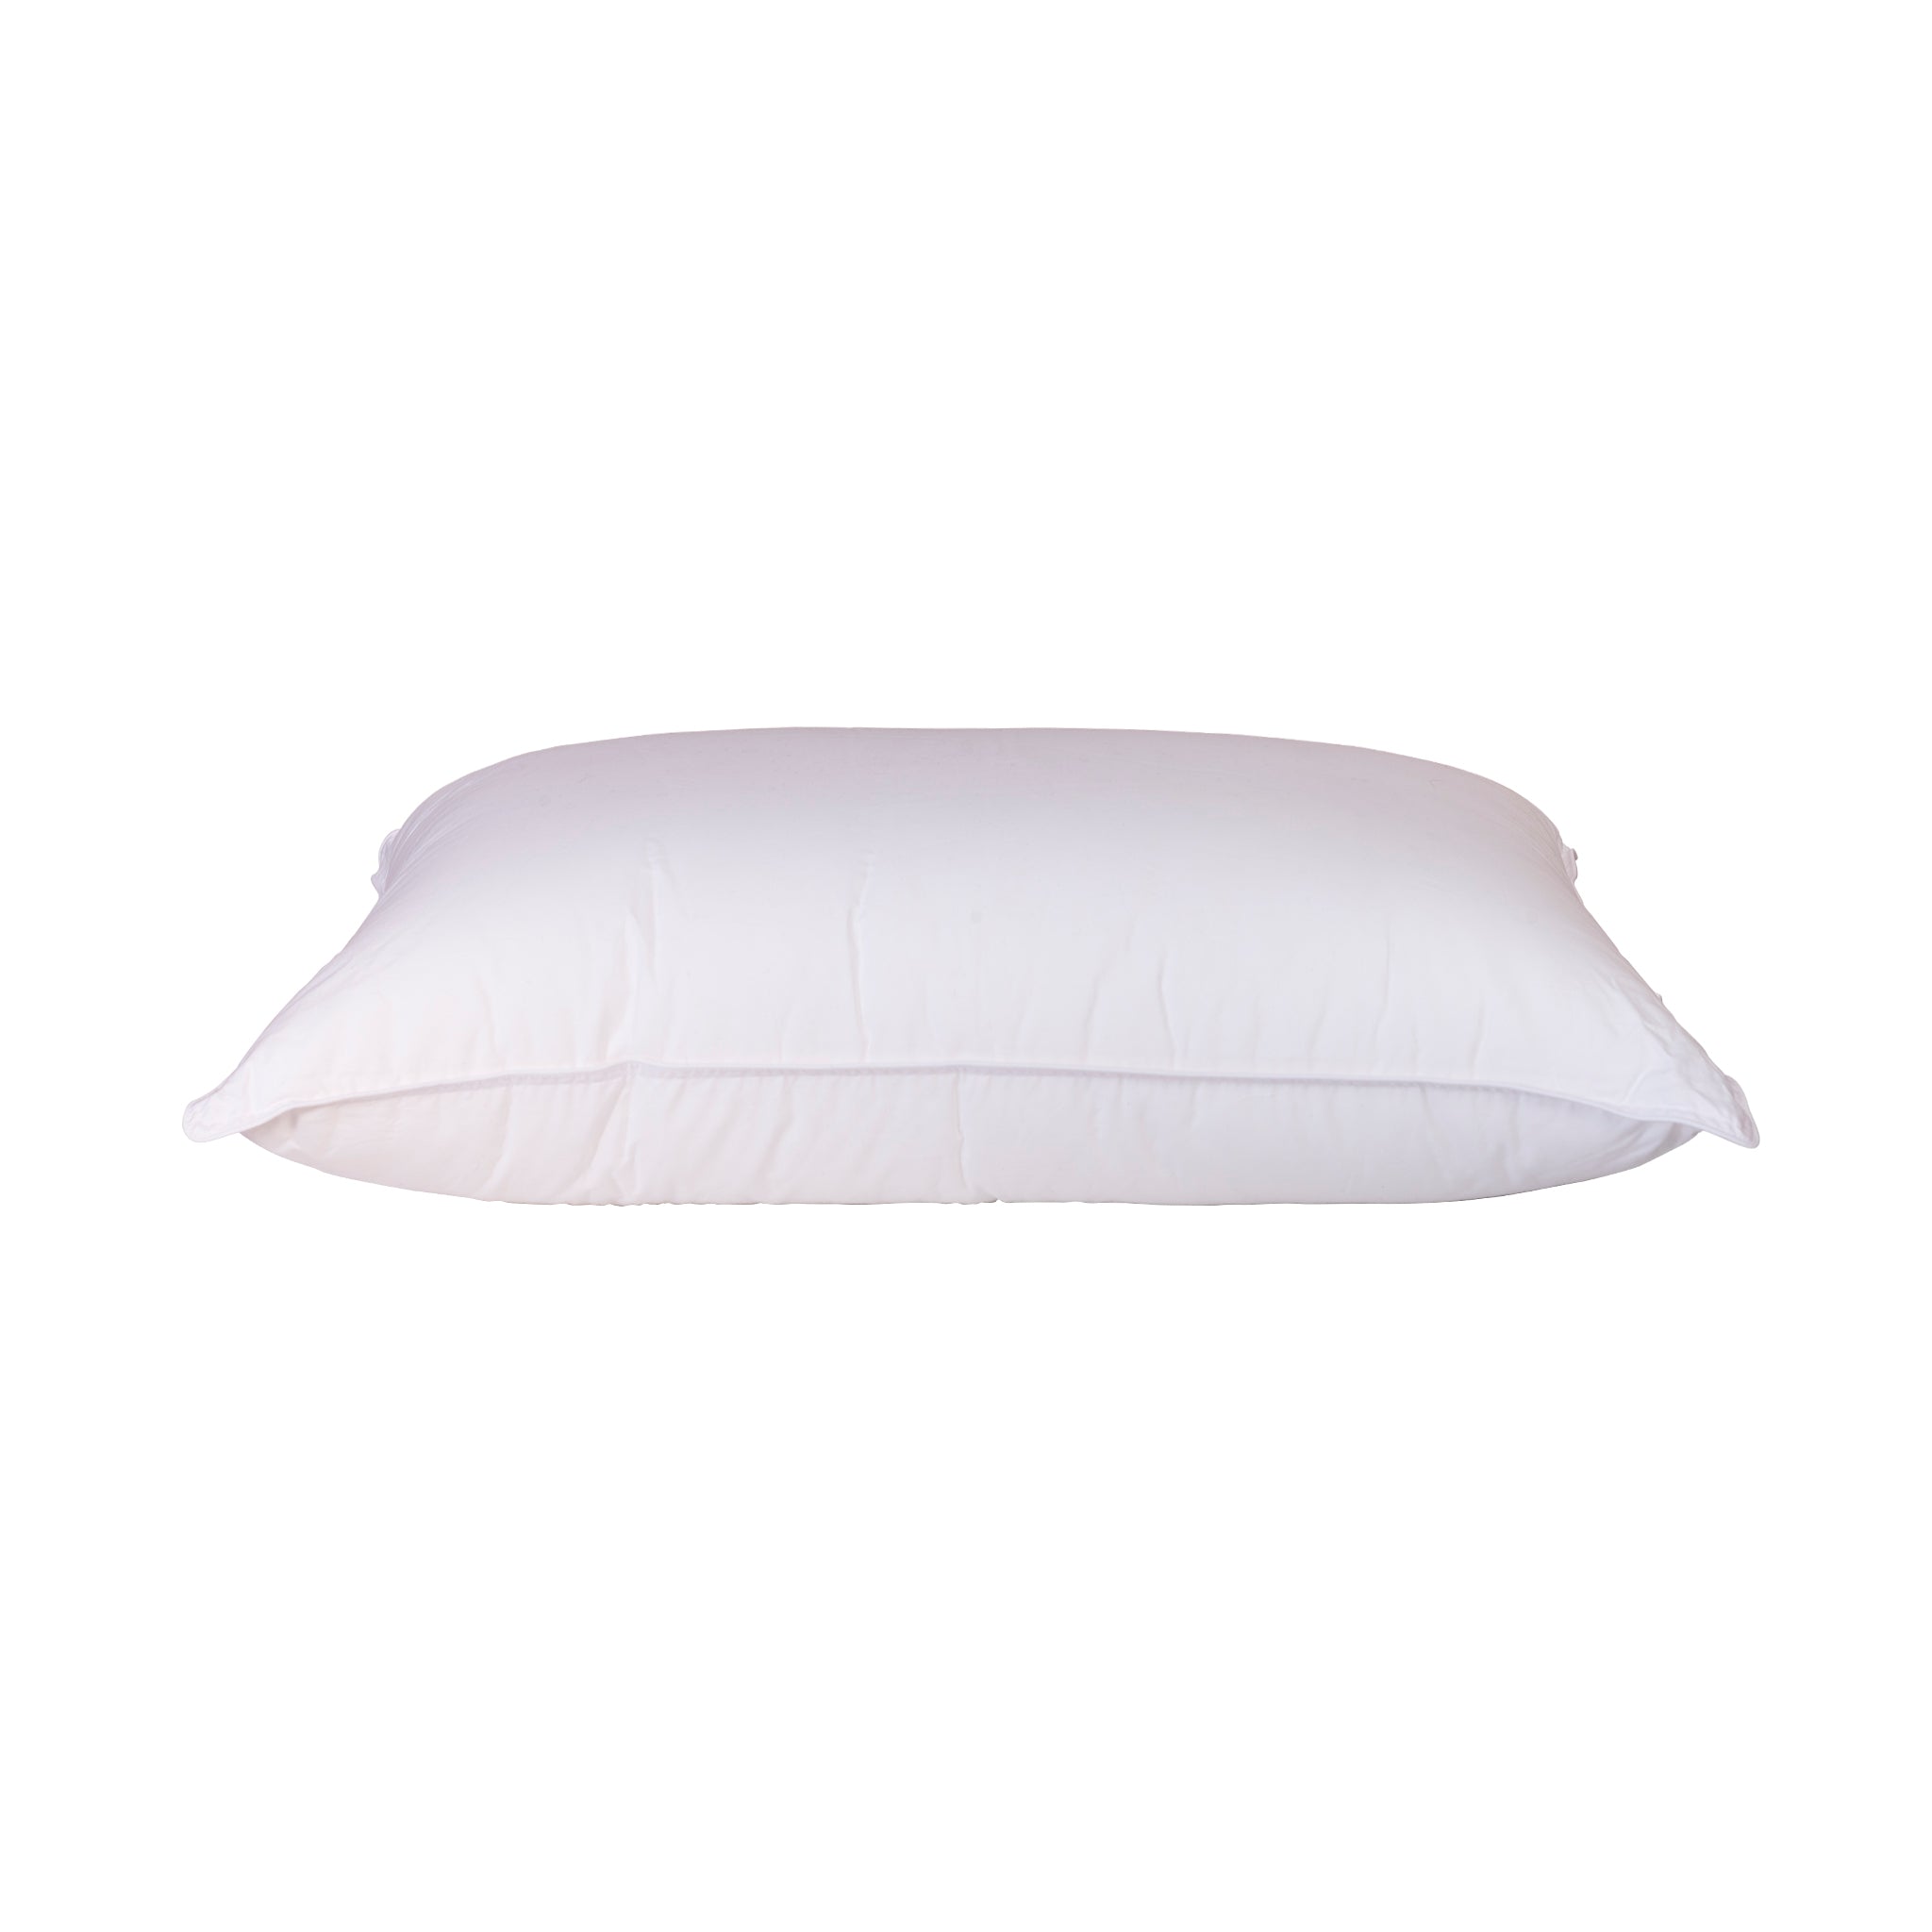 Gel Luxe Firm Pillow